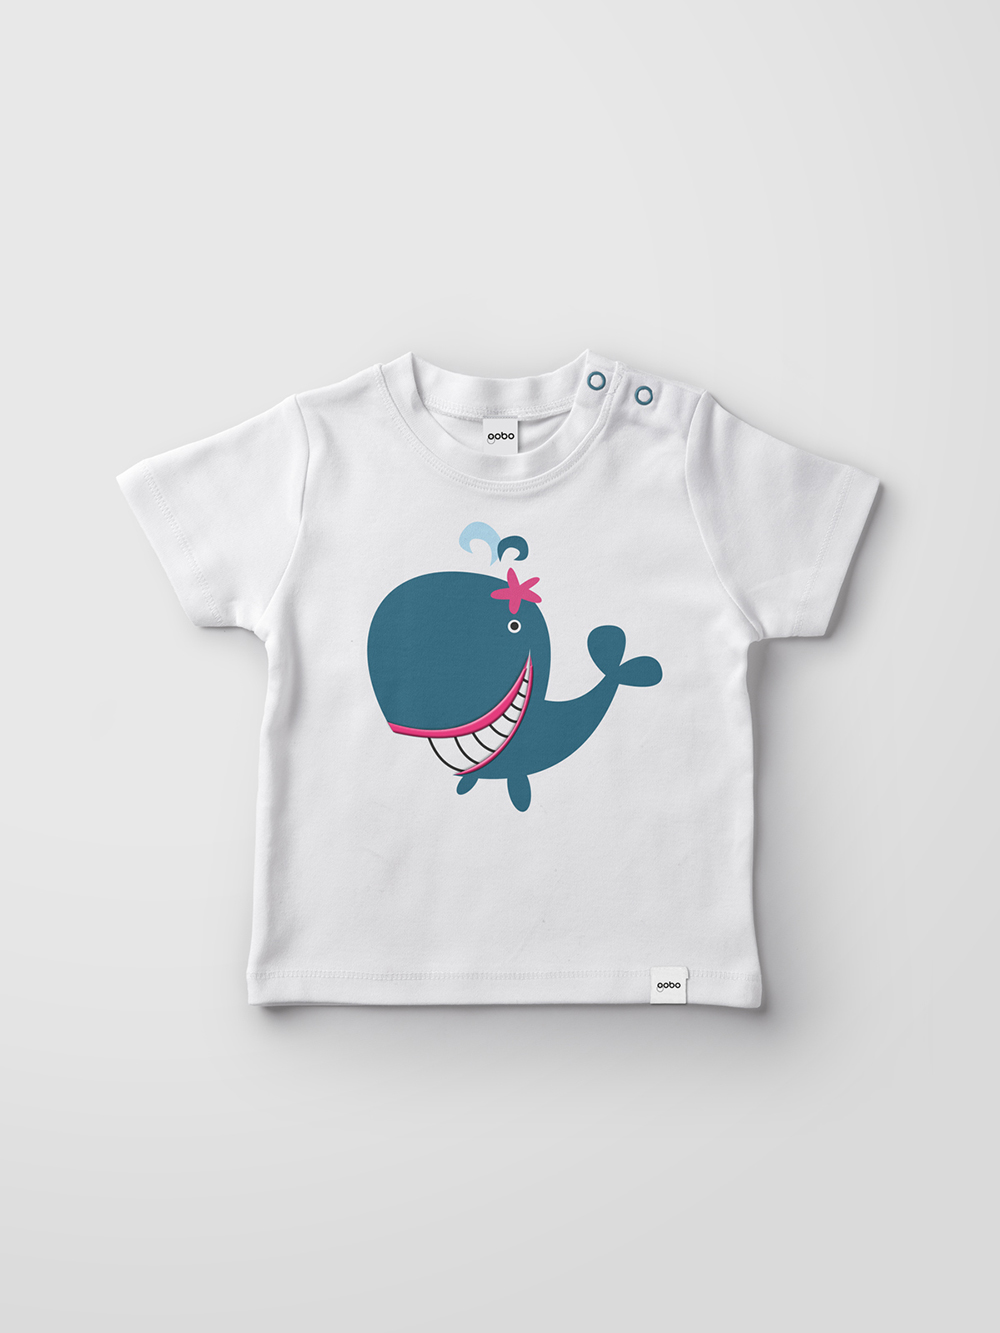 Diseño y desarrollo de identidad visual corporativa para Gobo. Detalle diseño de camiseta.